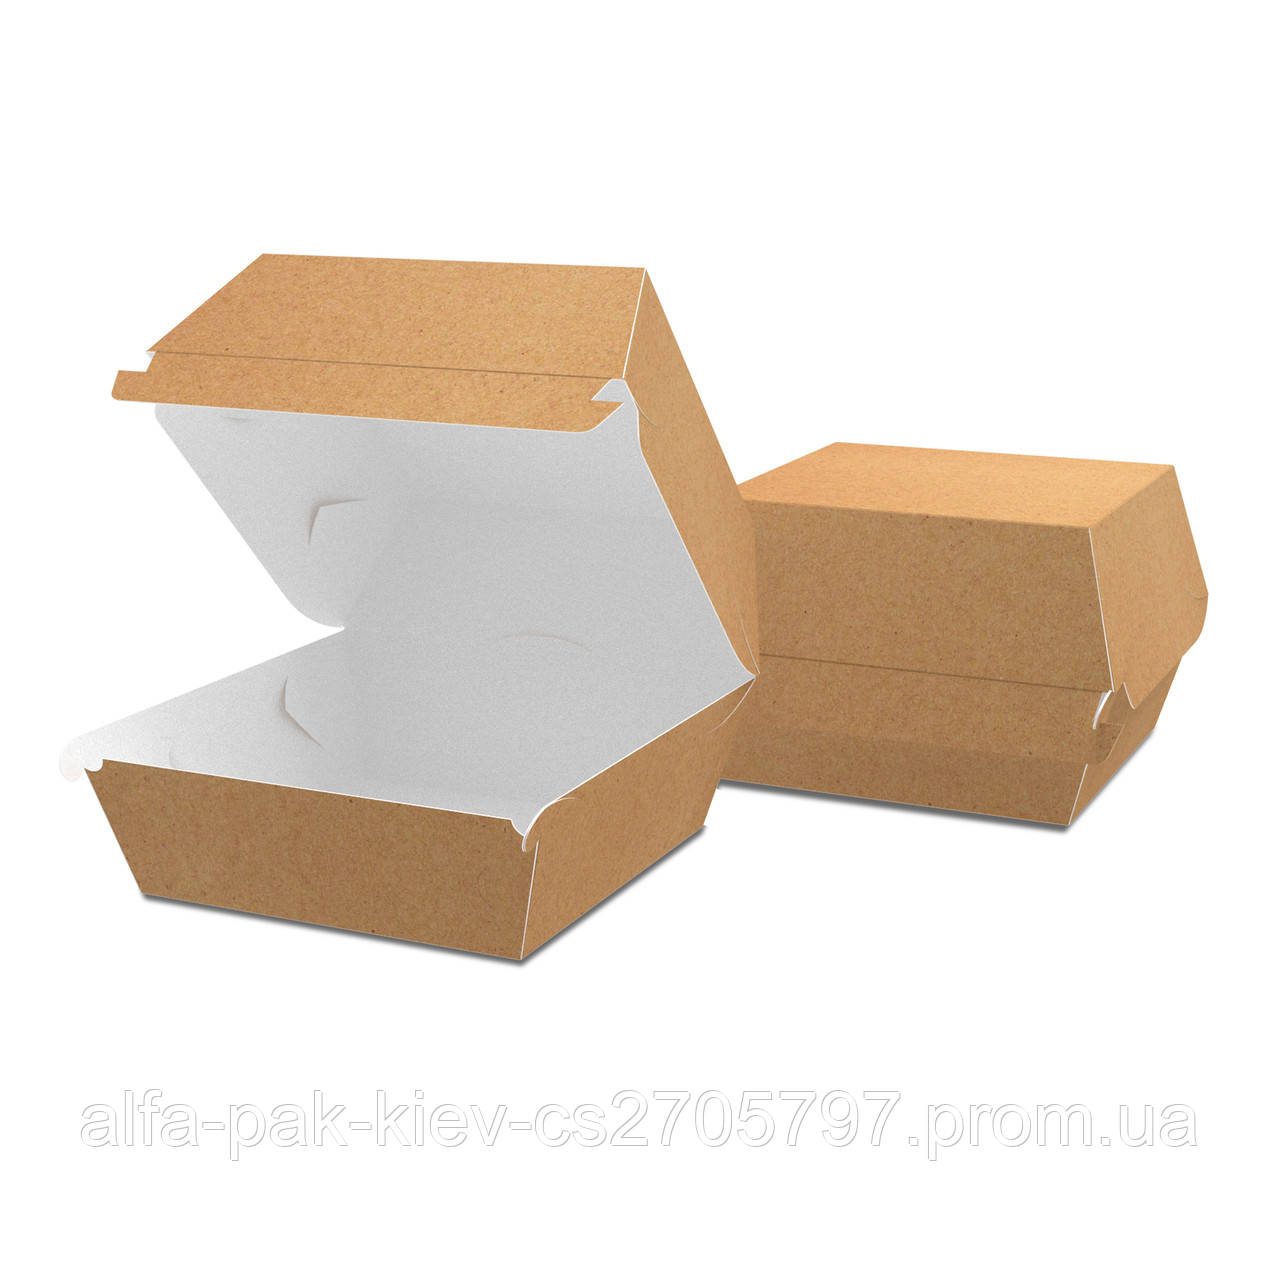 Упаковка для бургера крафт “Міді” 115х115х64 мм, упаковка 1100 шт